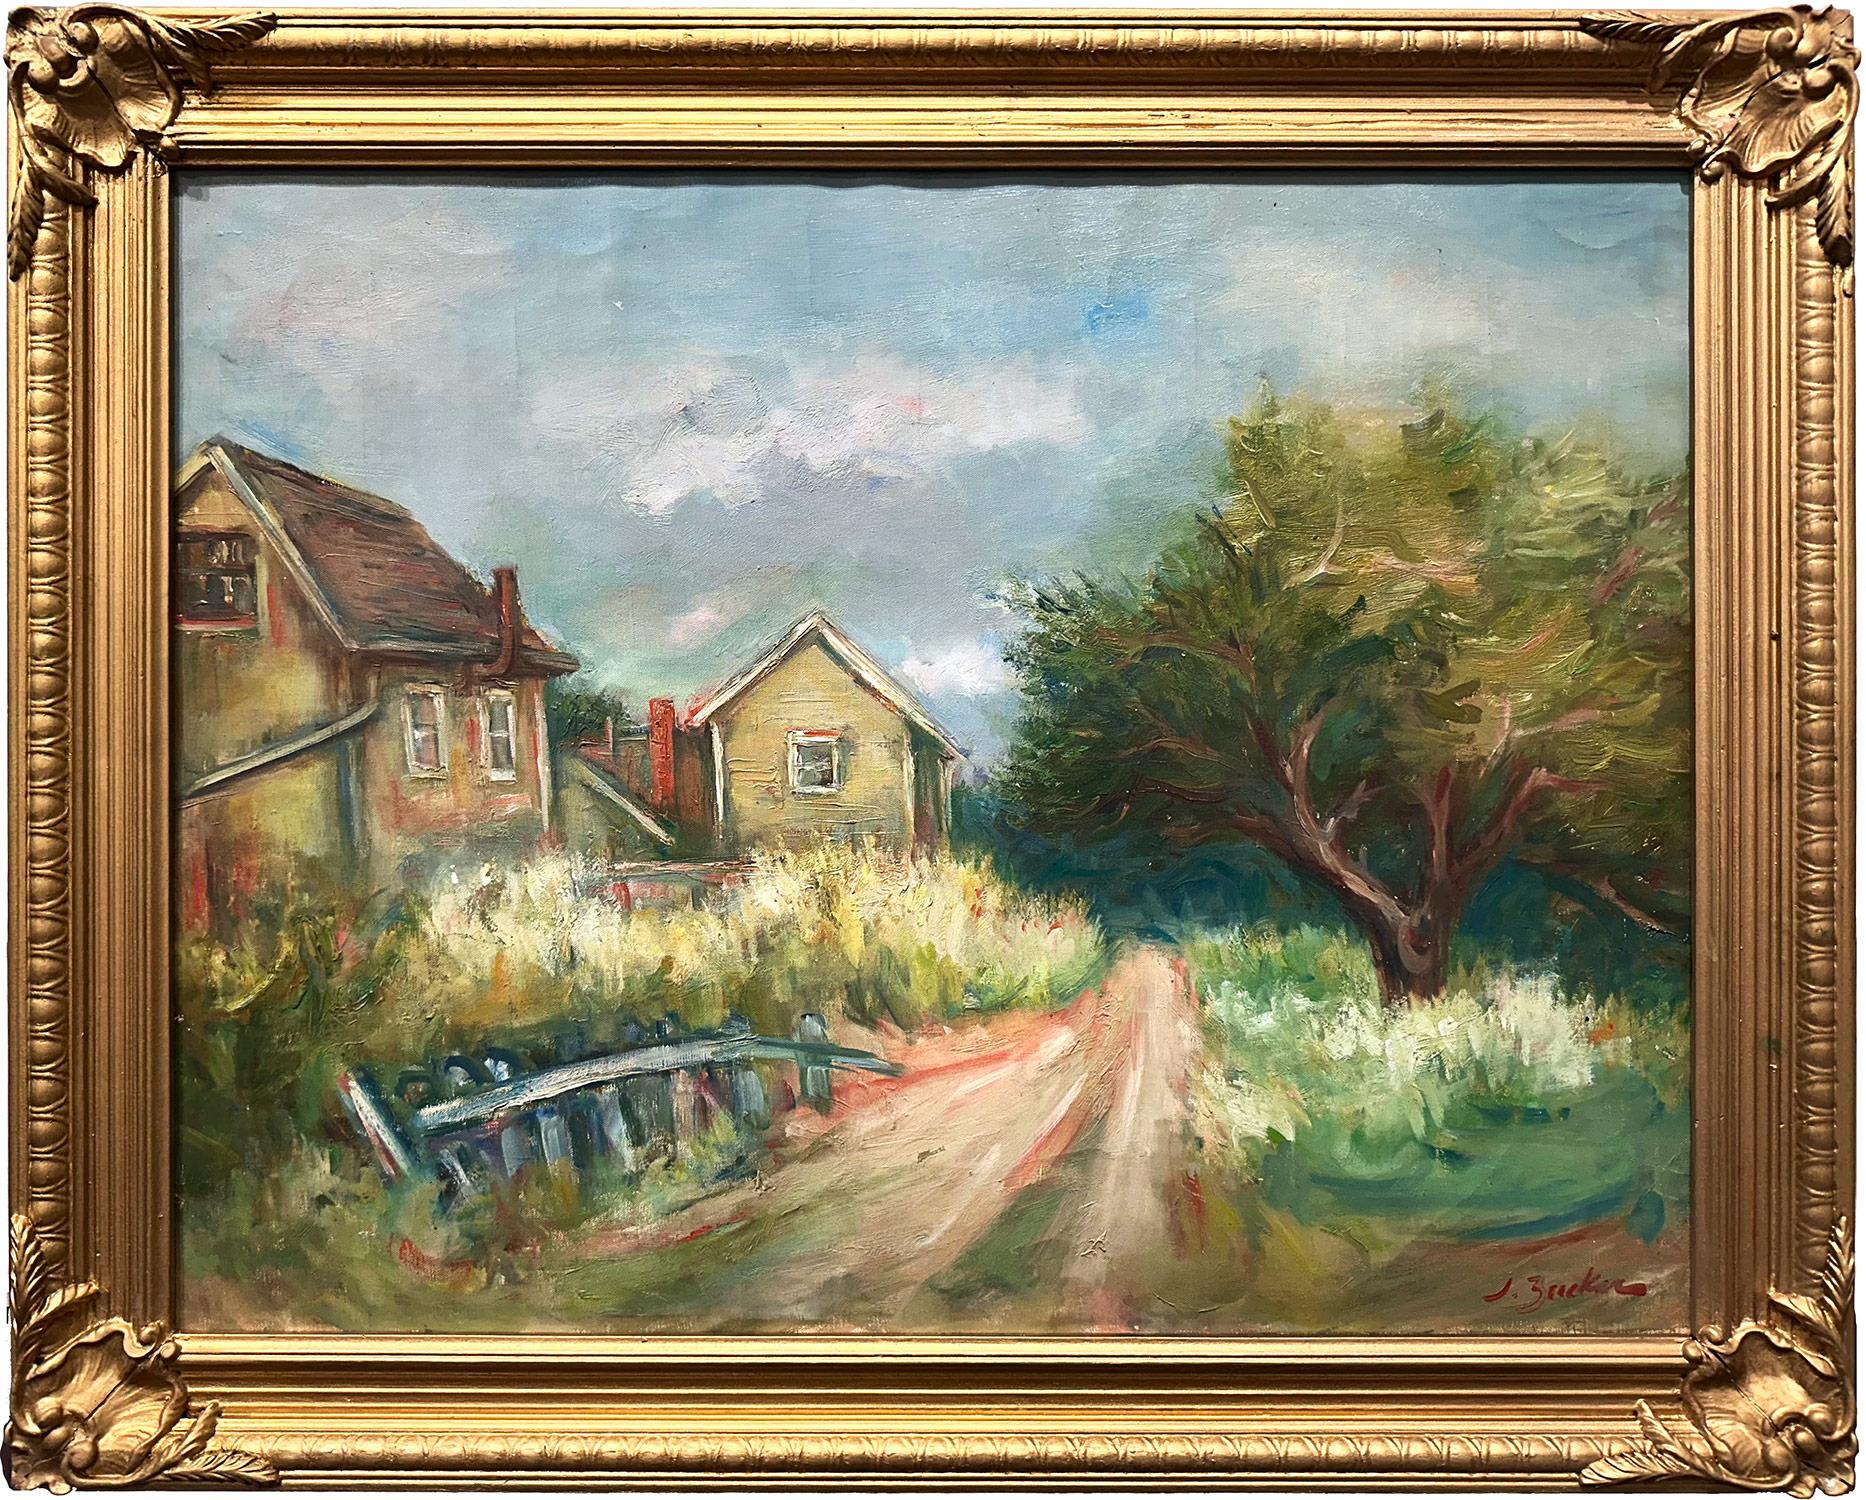 Landscape Painting Jacques Zucker - Peinture à l'huile sur toile, paysage post-impressionniste "Pathway to the Farm"